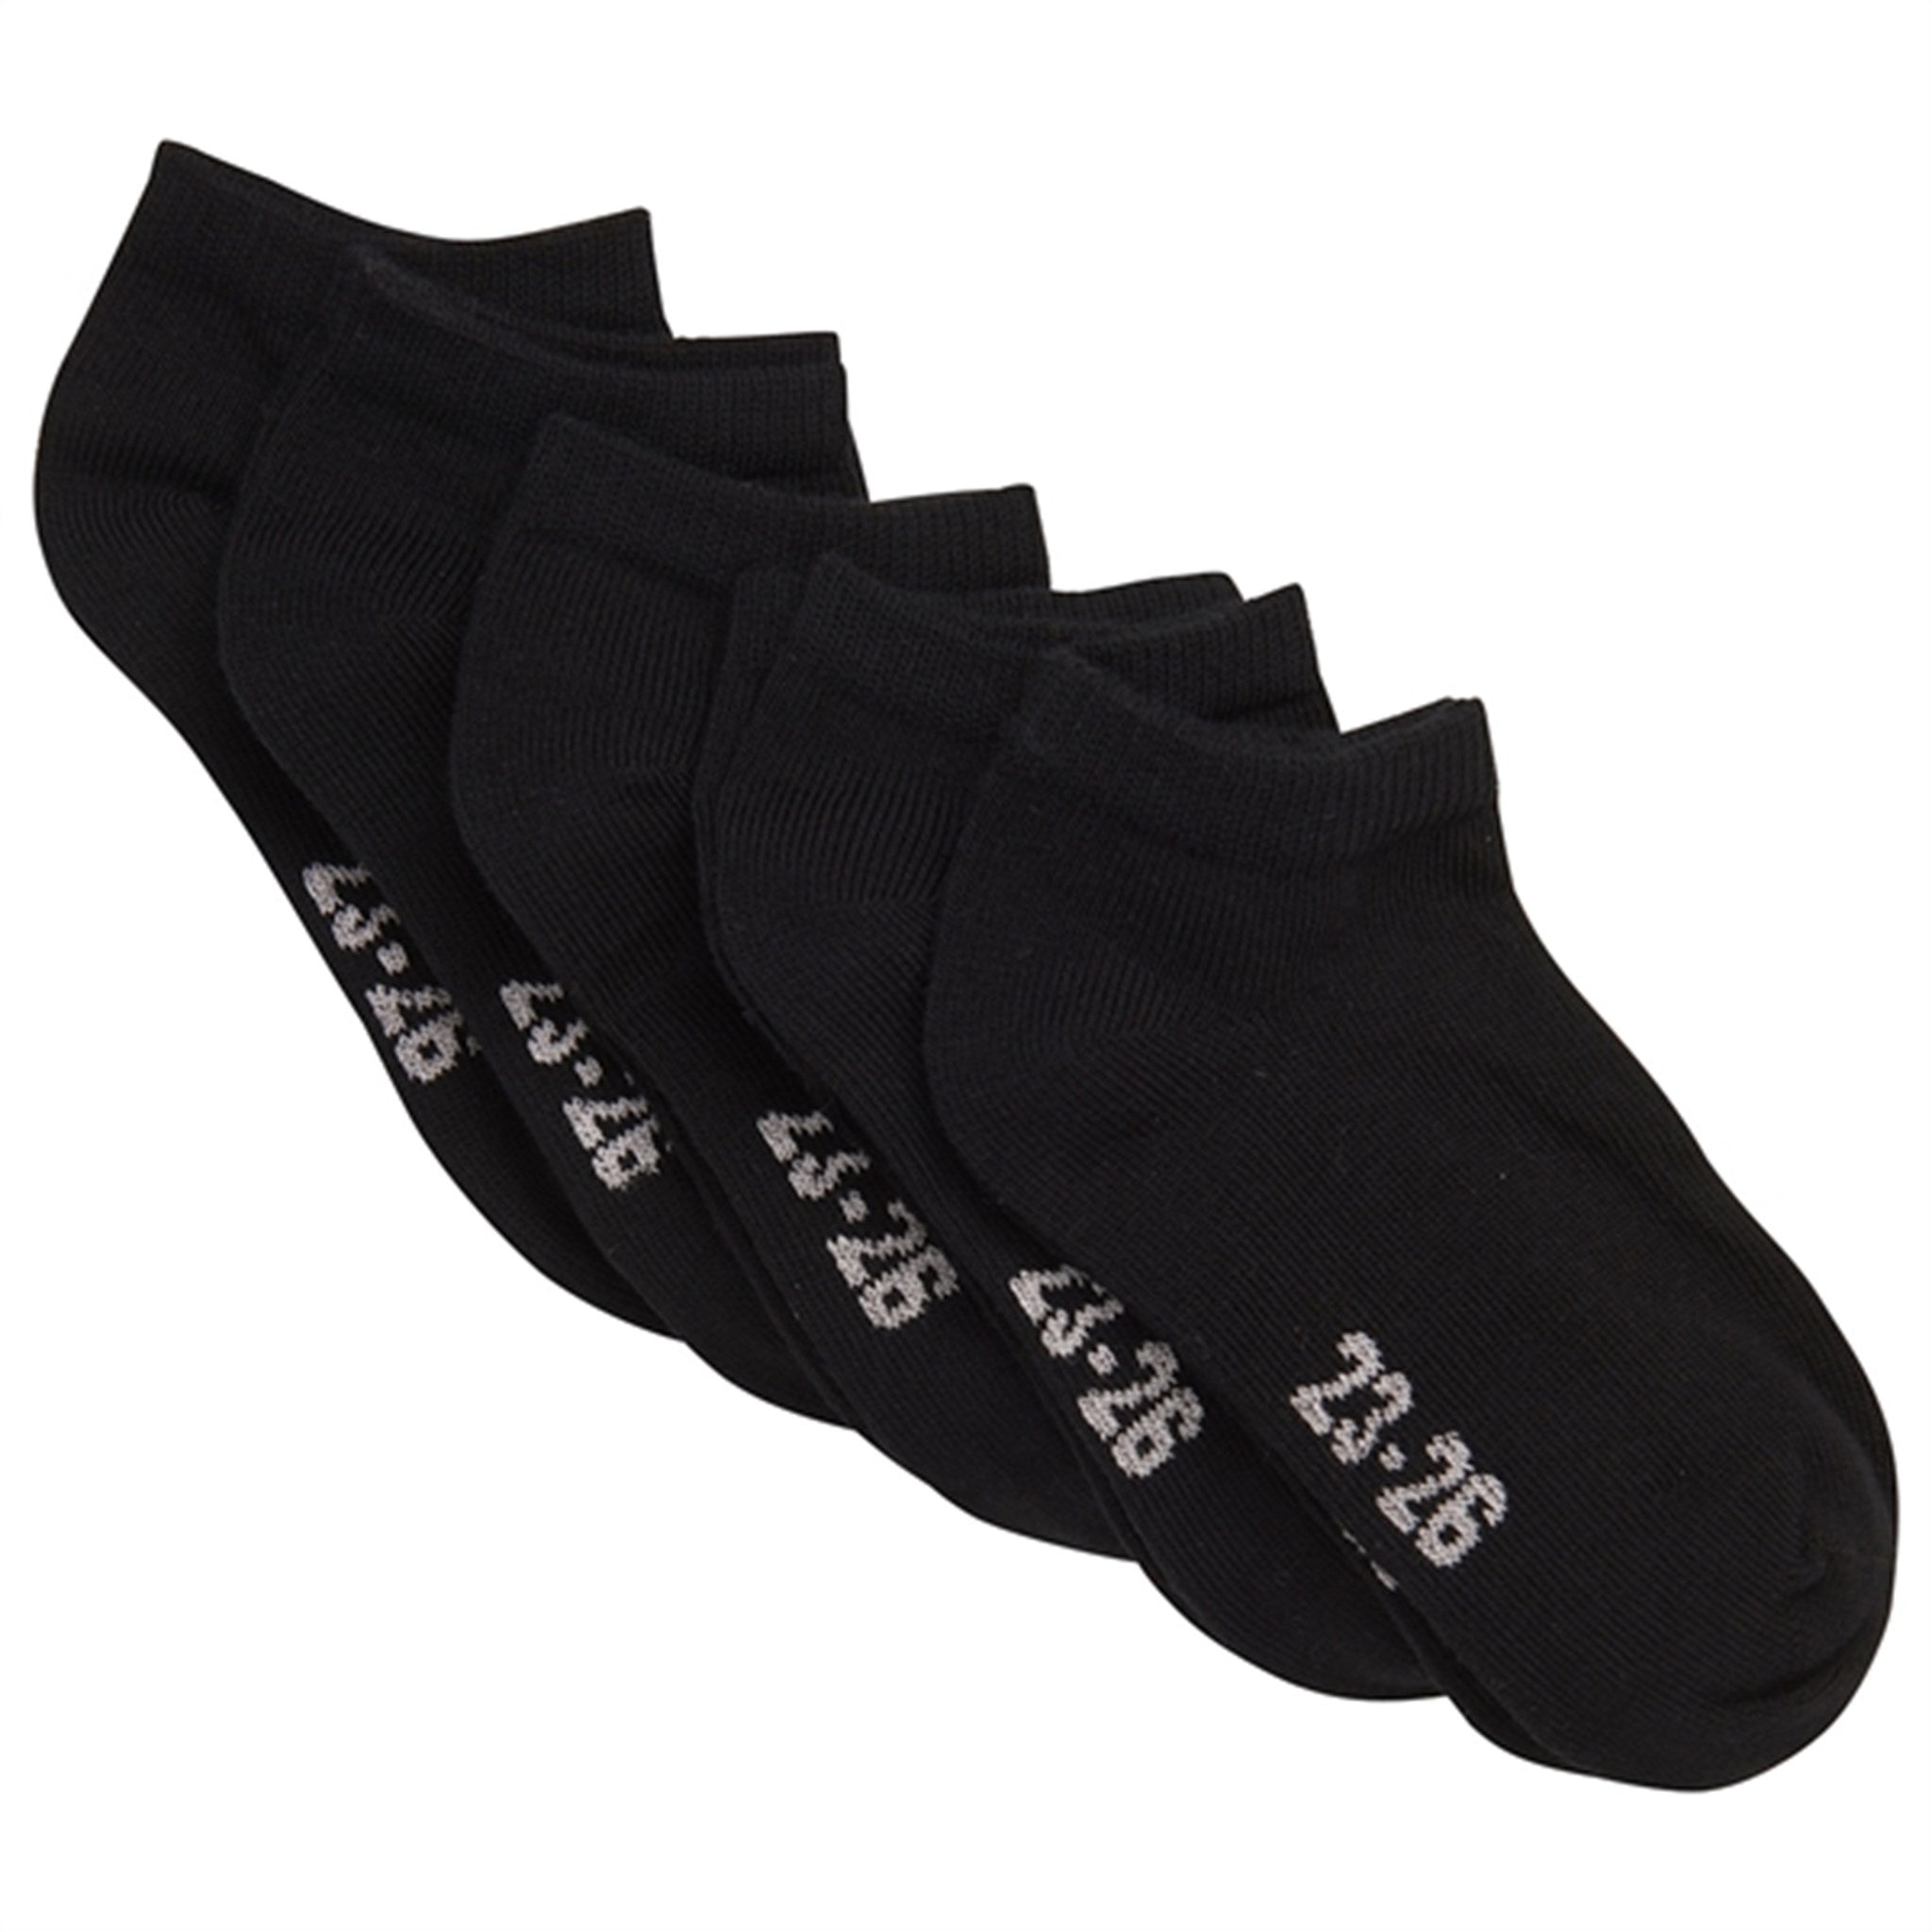 Minymo Black Socks Low Cut 5-pack NOOS